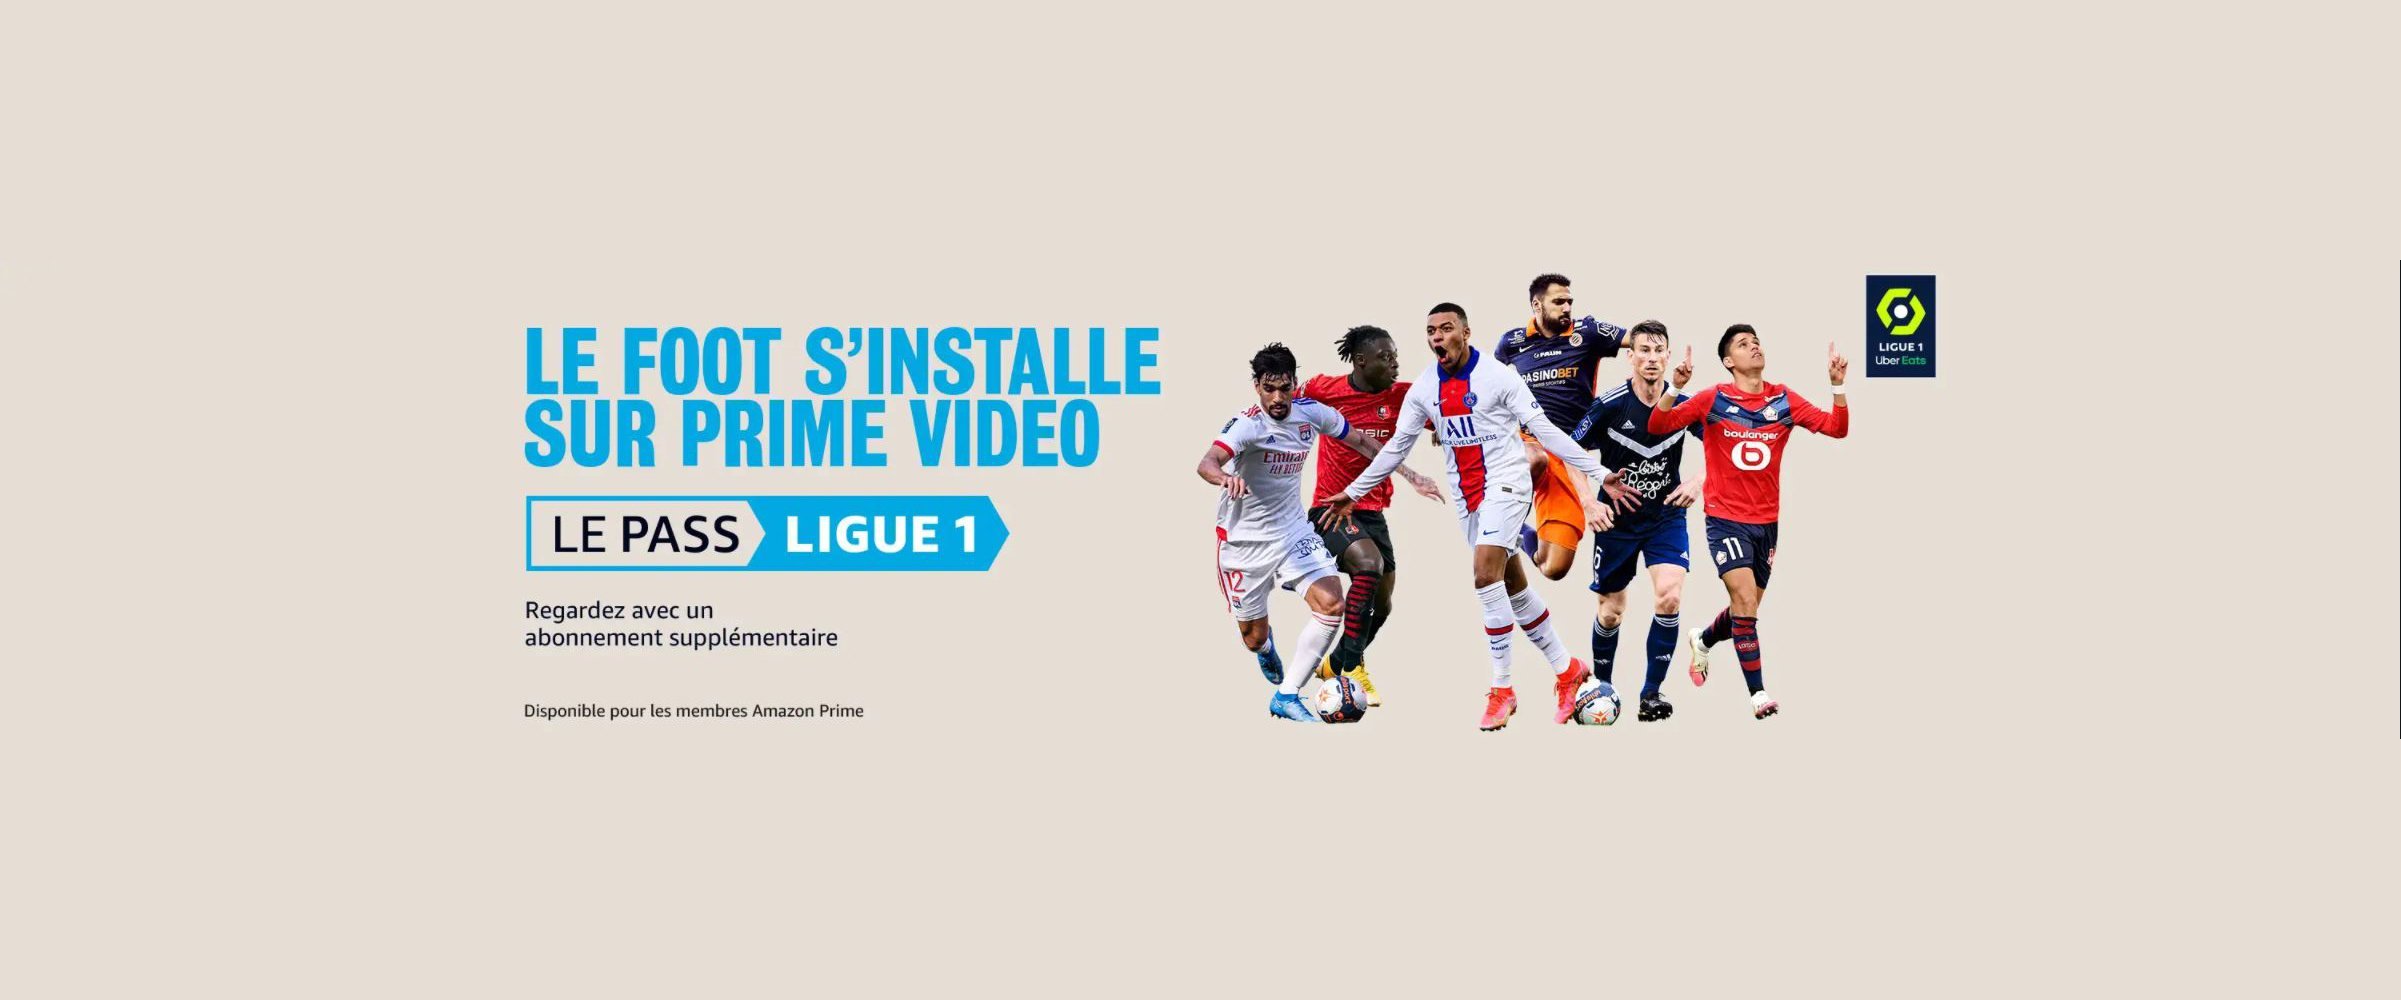 Prime Video Ligue 1 Jo U6zja9xn2lm